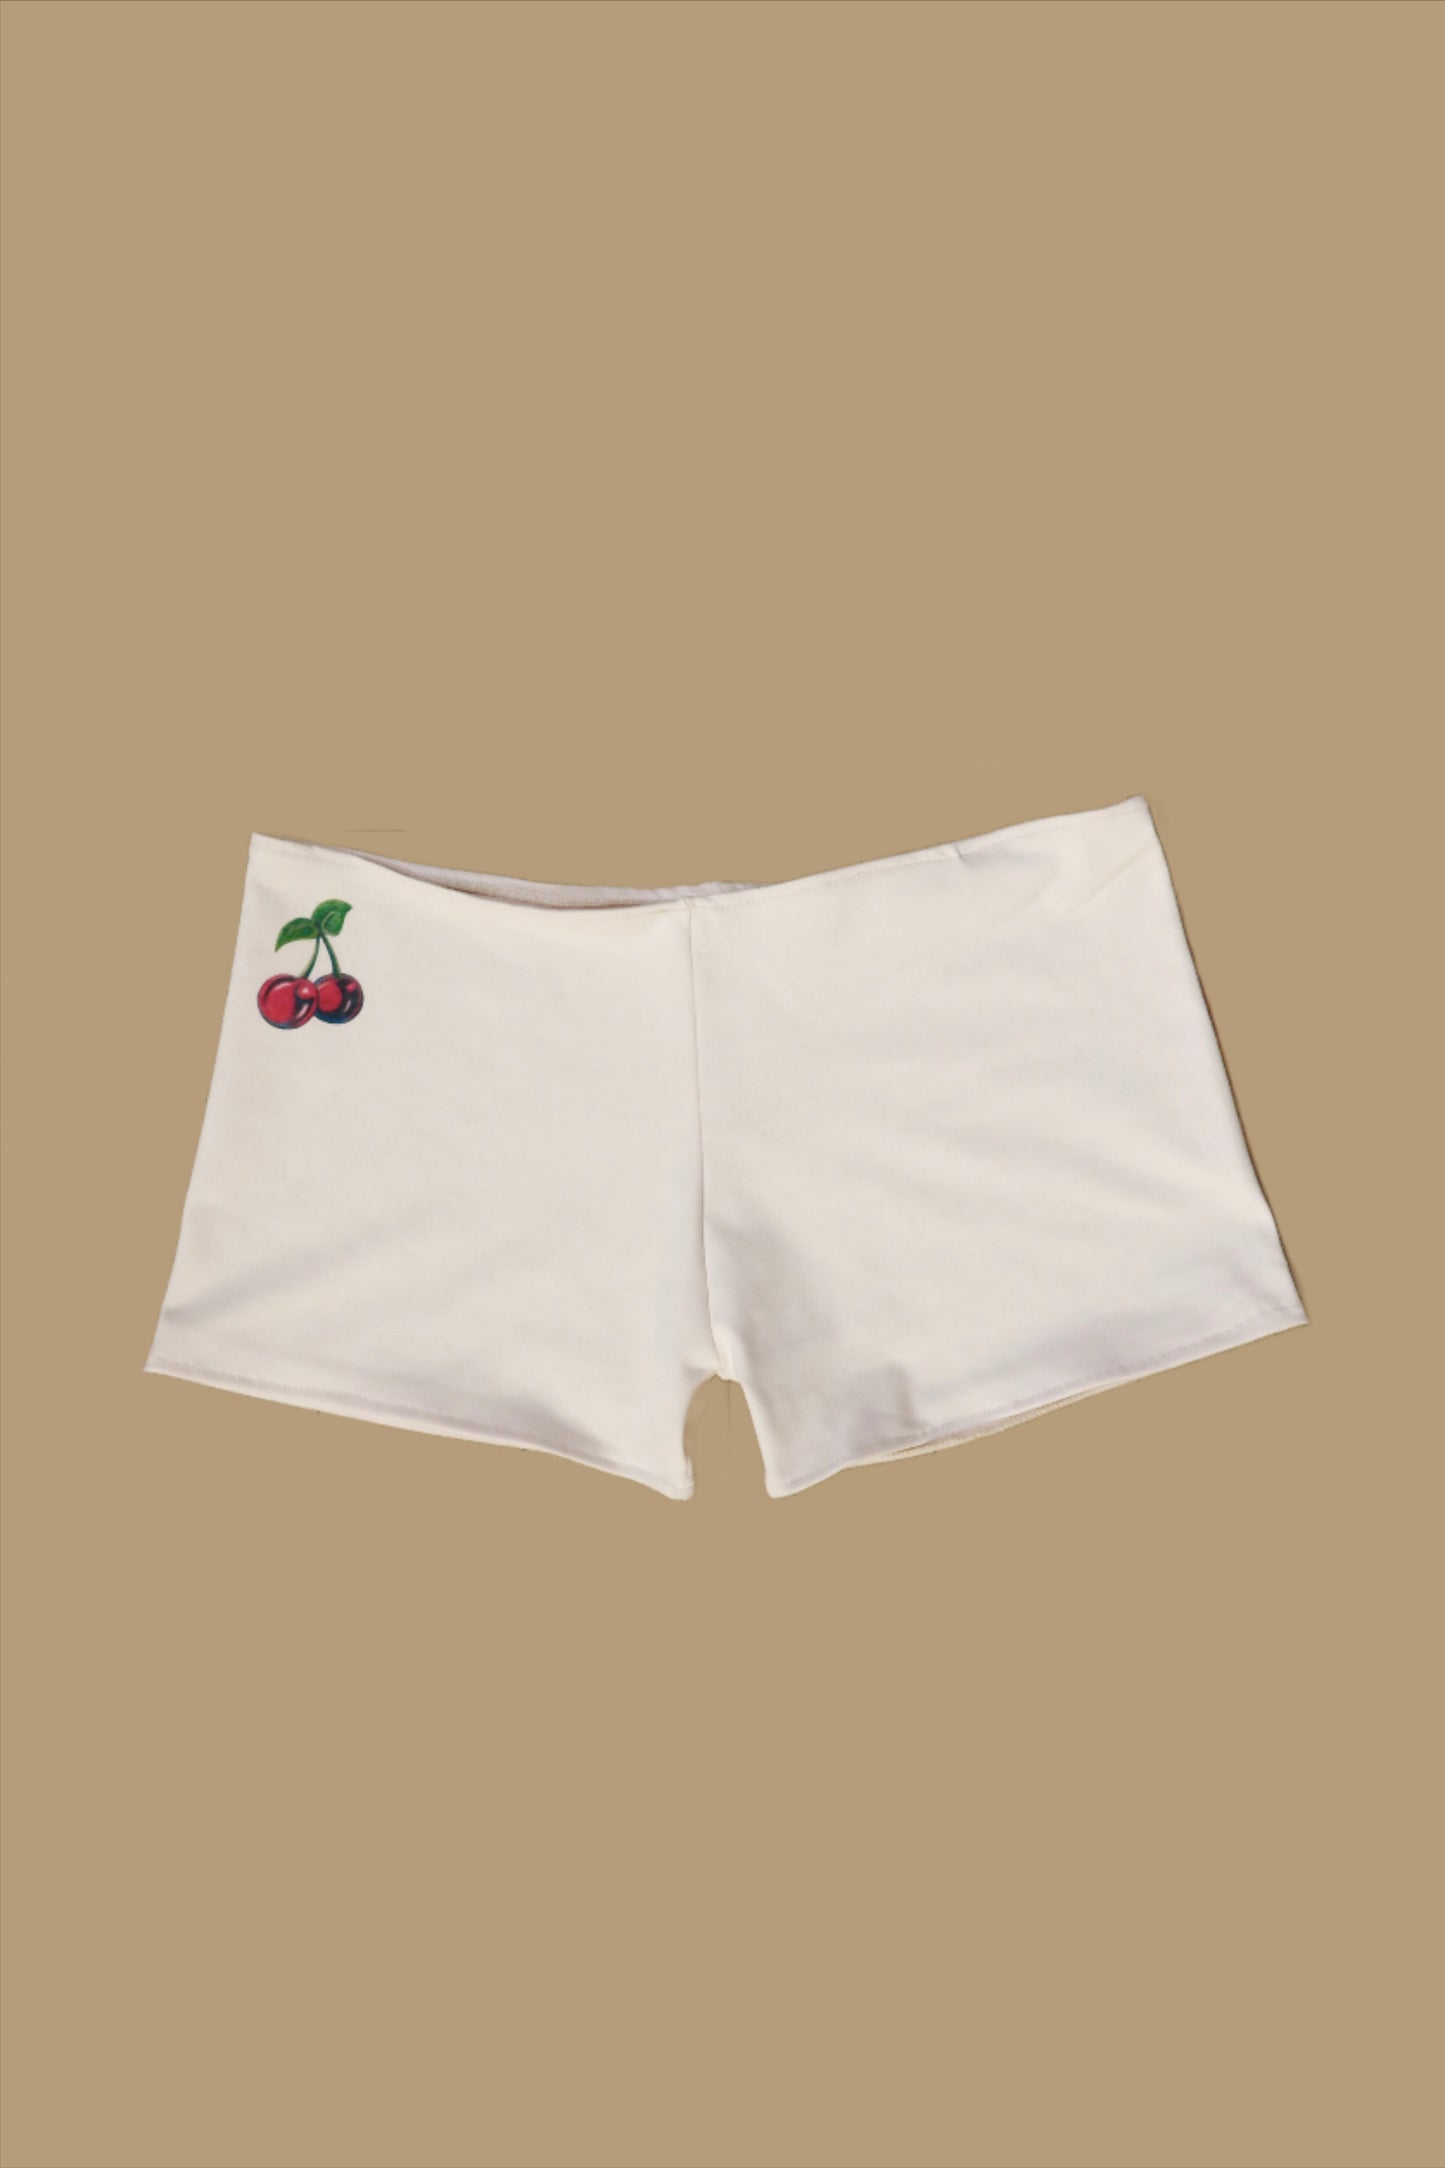 Cherry Tramp Stamp Shorts